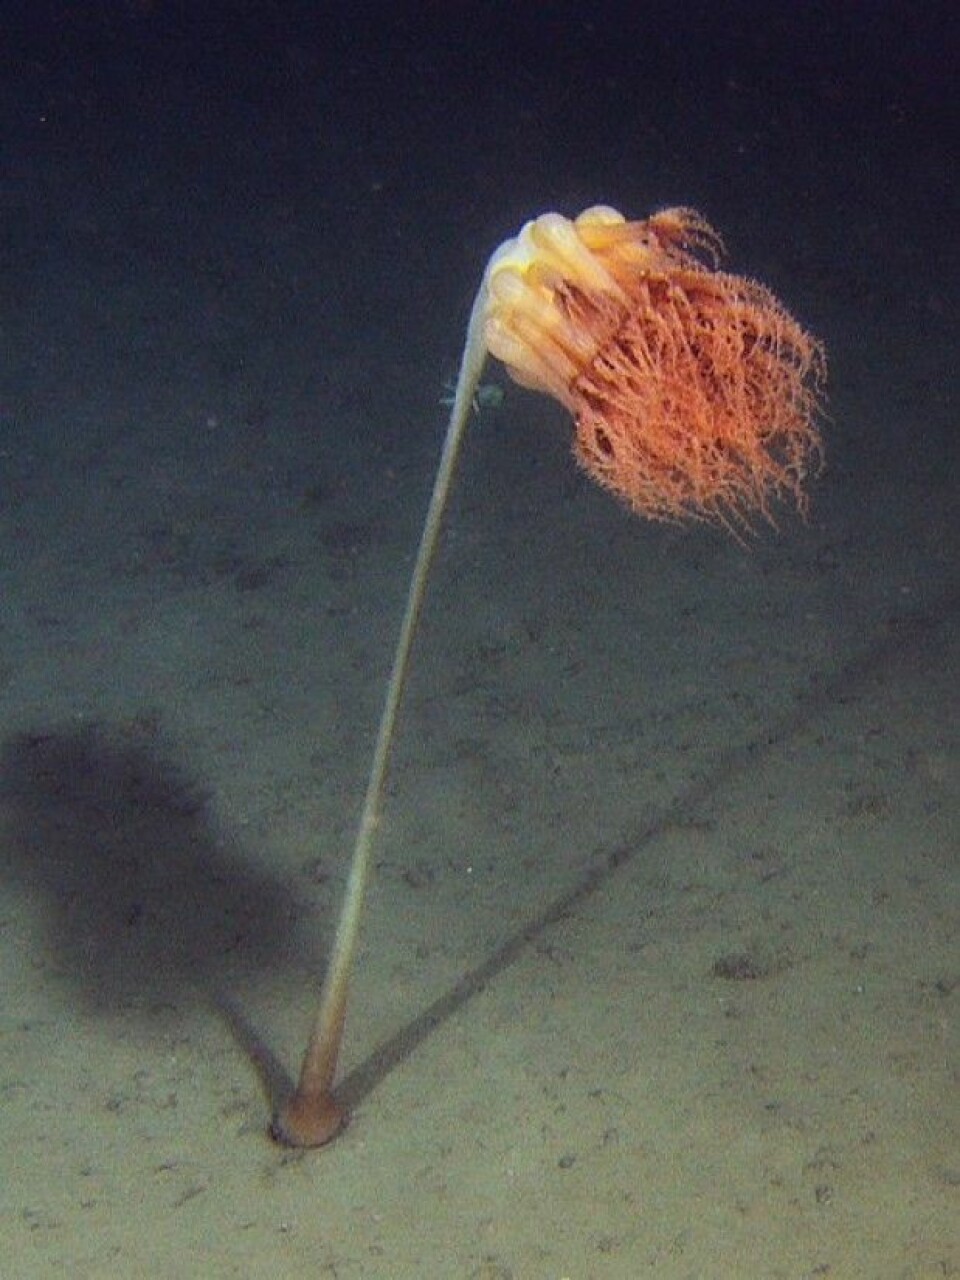 Denne dyphavsjøfjæren kan bli over to meter høy. De vi har observert på dette toktet har vært ca 1,5 meter høye. (Foto: MAREANO)